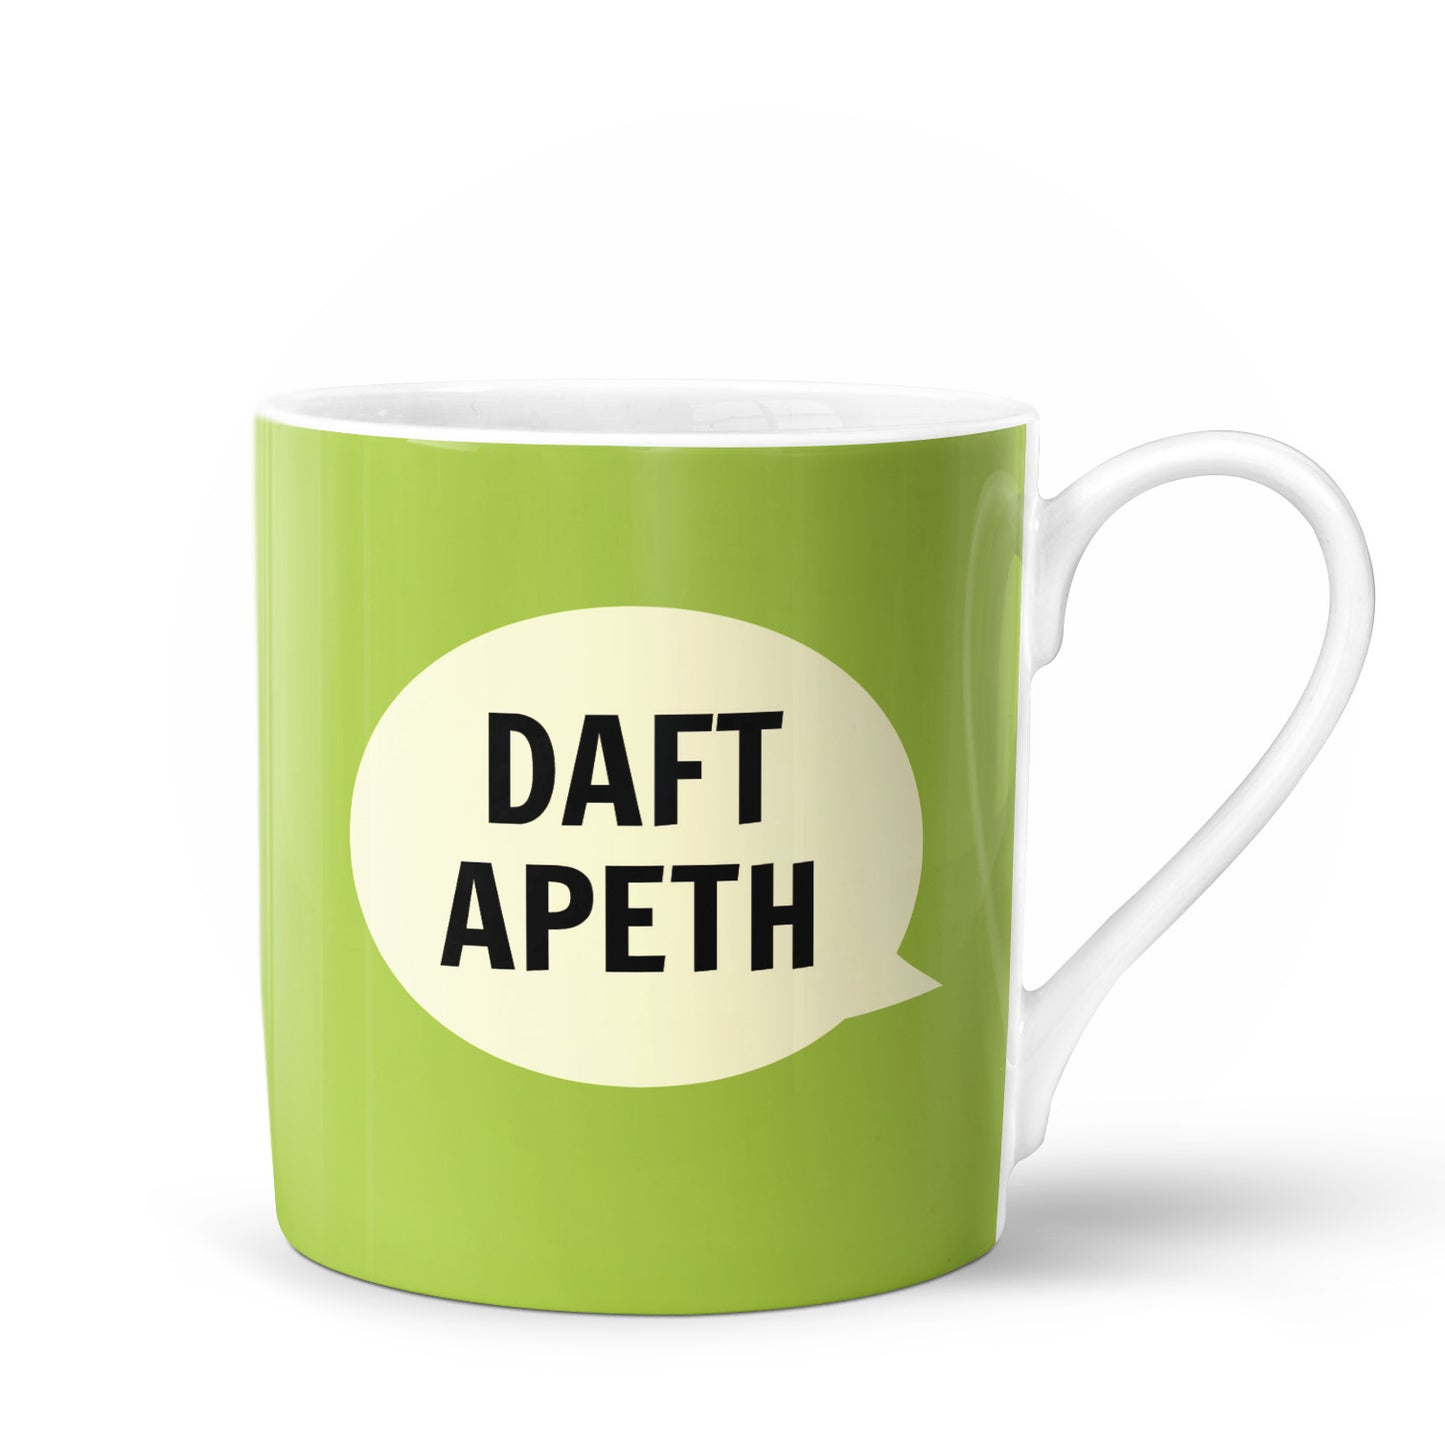 Daft Apeth Bone China Mug - The Great Yorkshire Shop